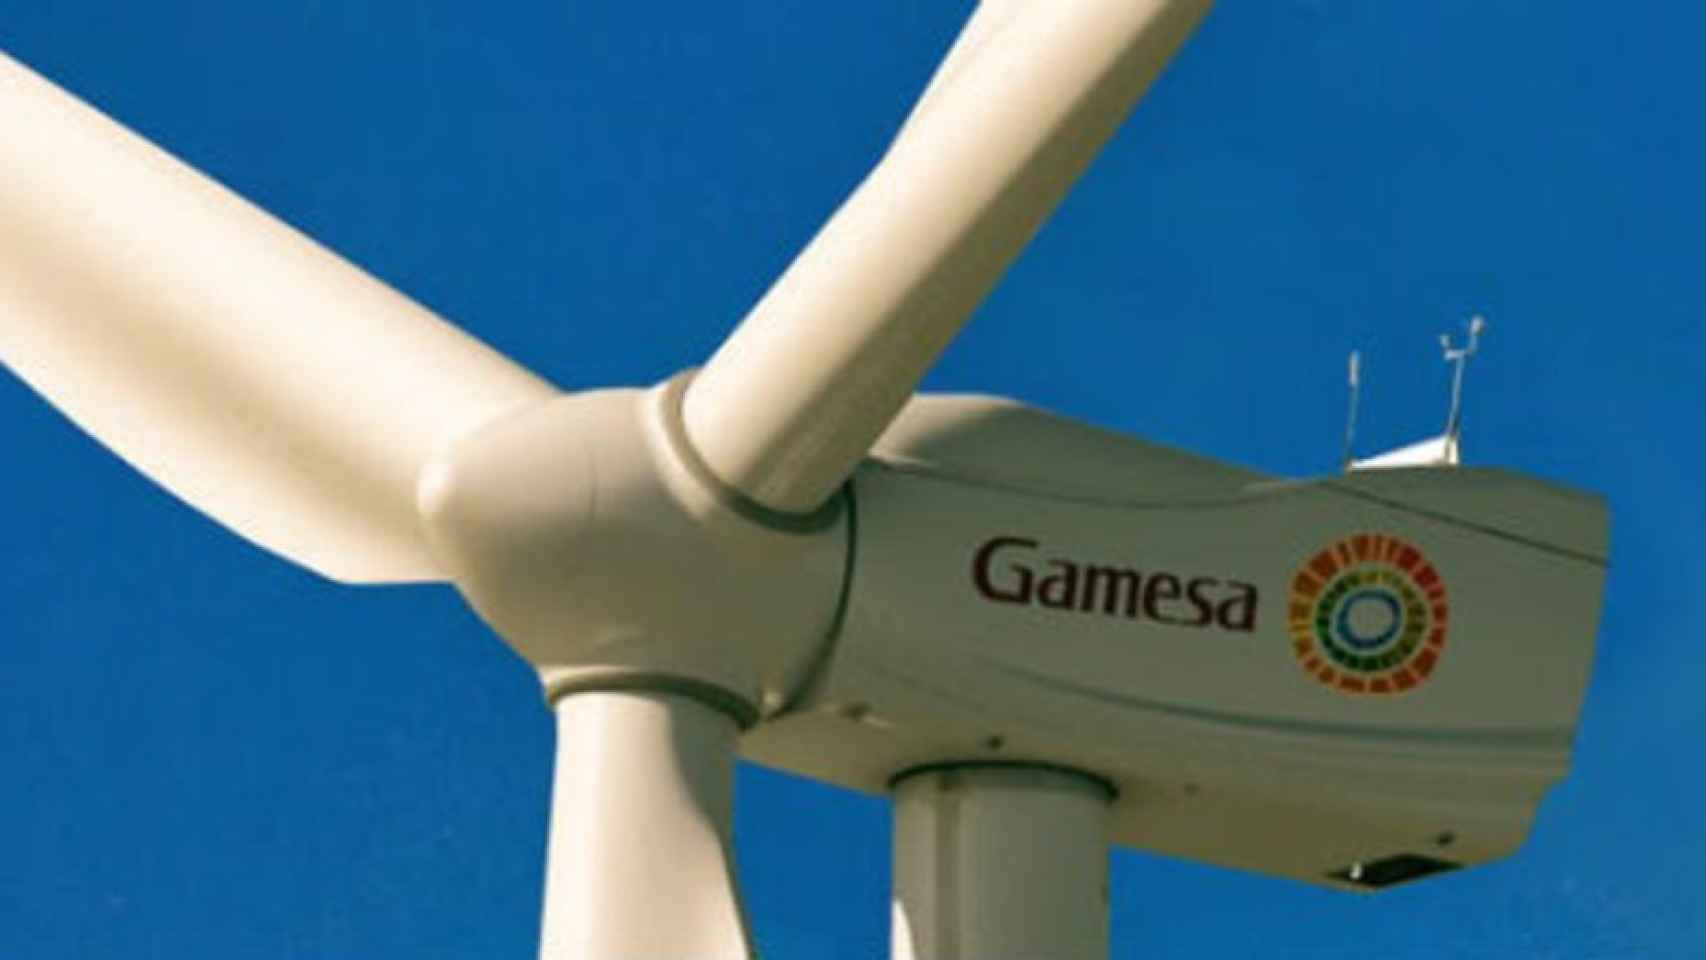 Bruselas da luz verde a la fusión de Gamesa y Siemens